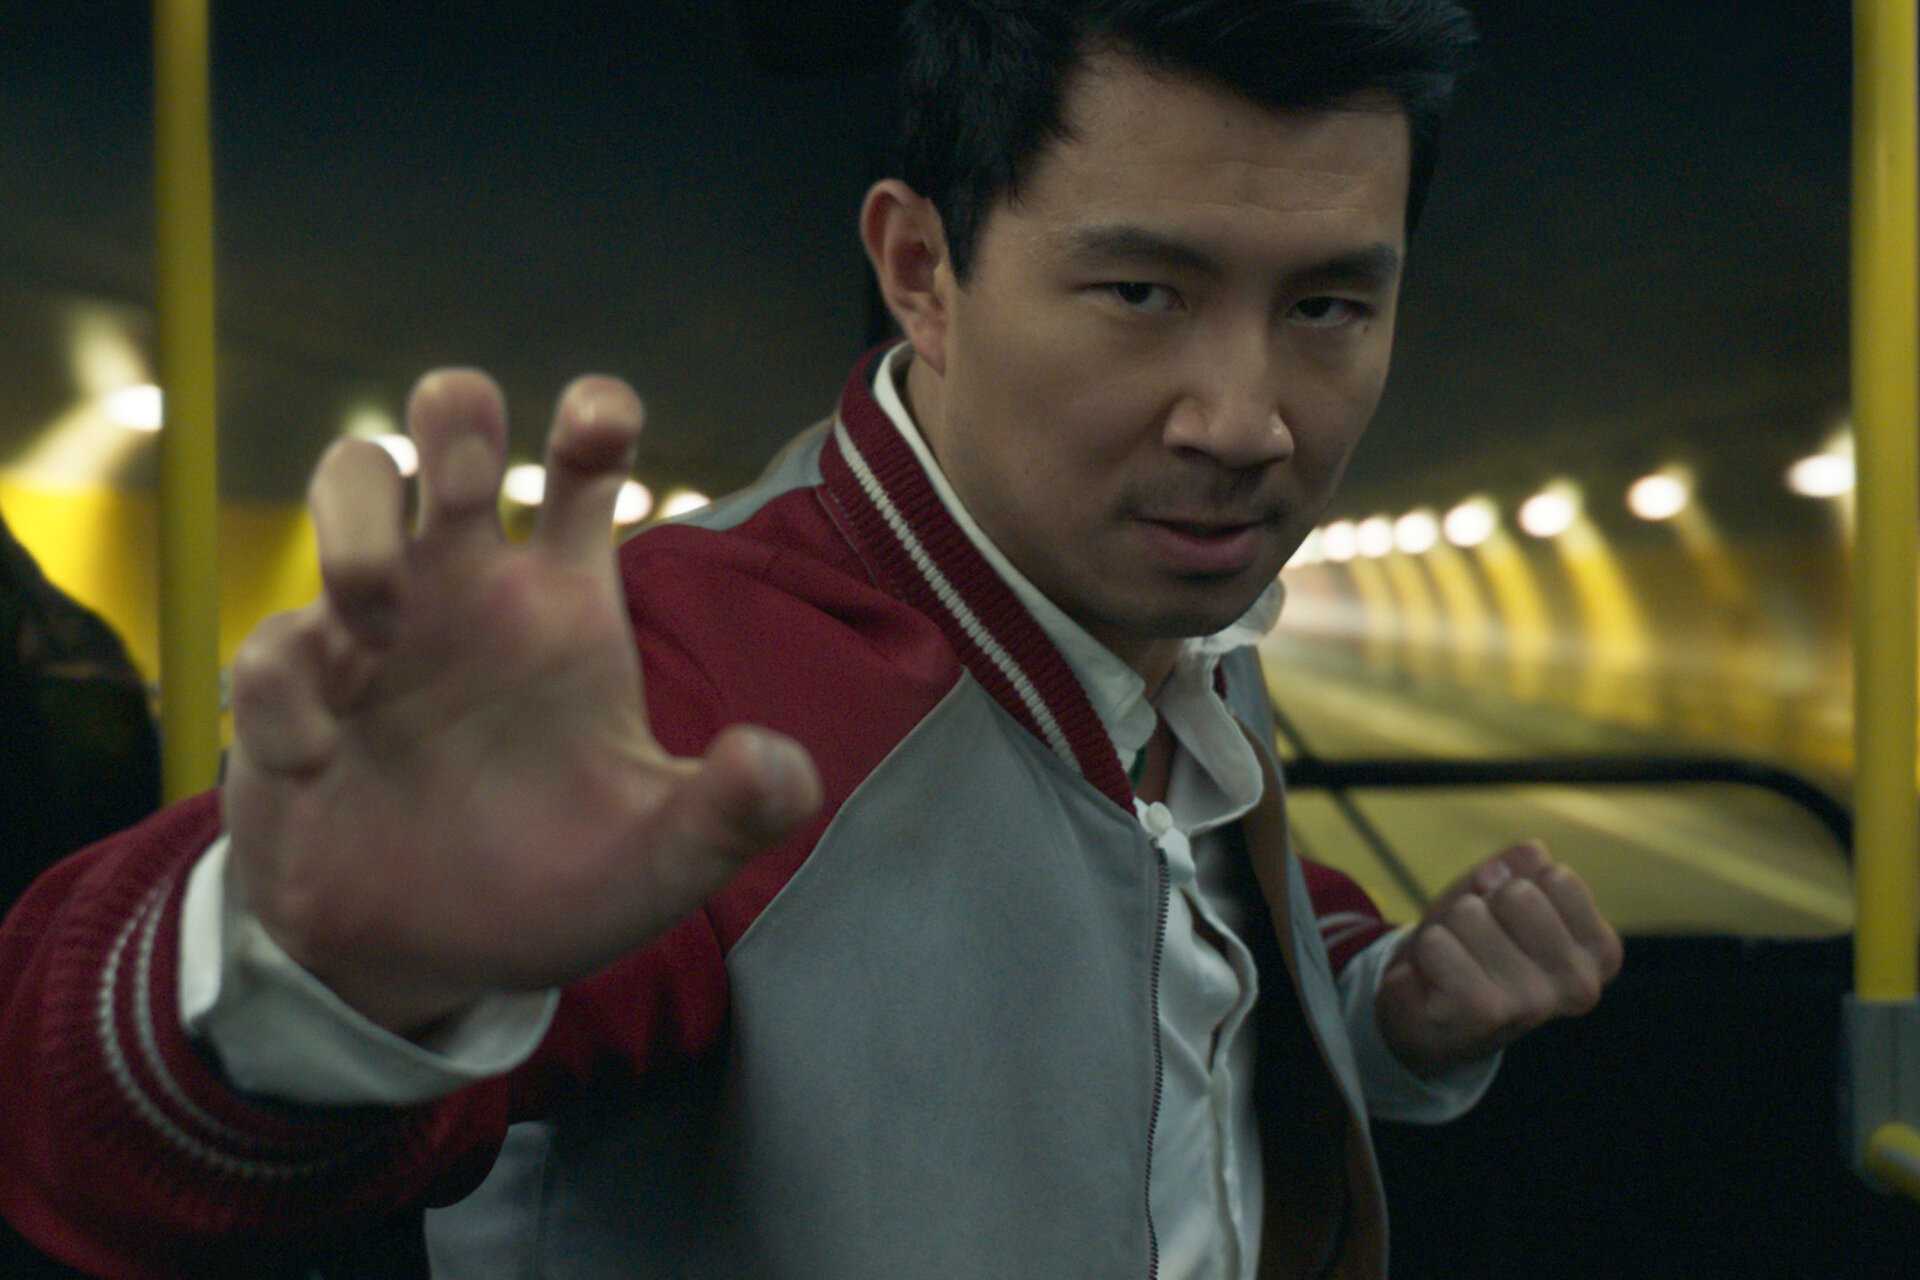 “шан-чи и легенда десяти колец” – первый фильм marvel с азиатским супергероем